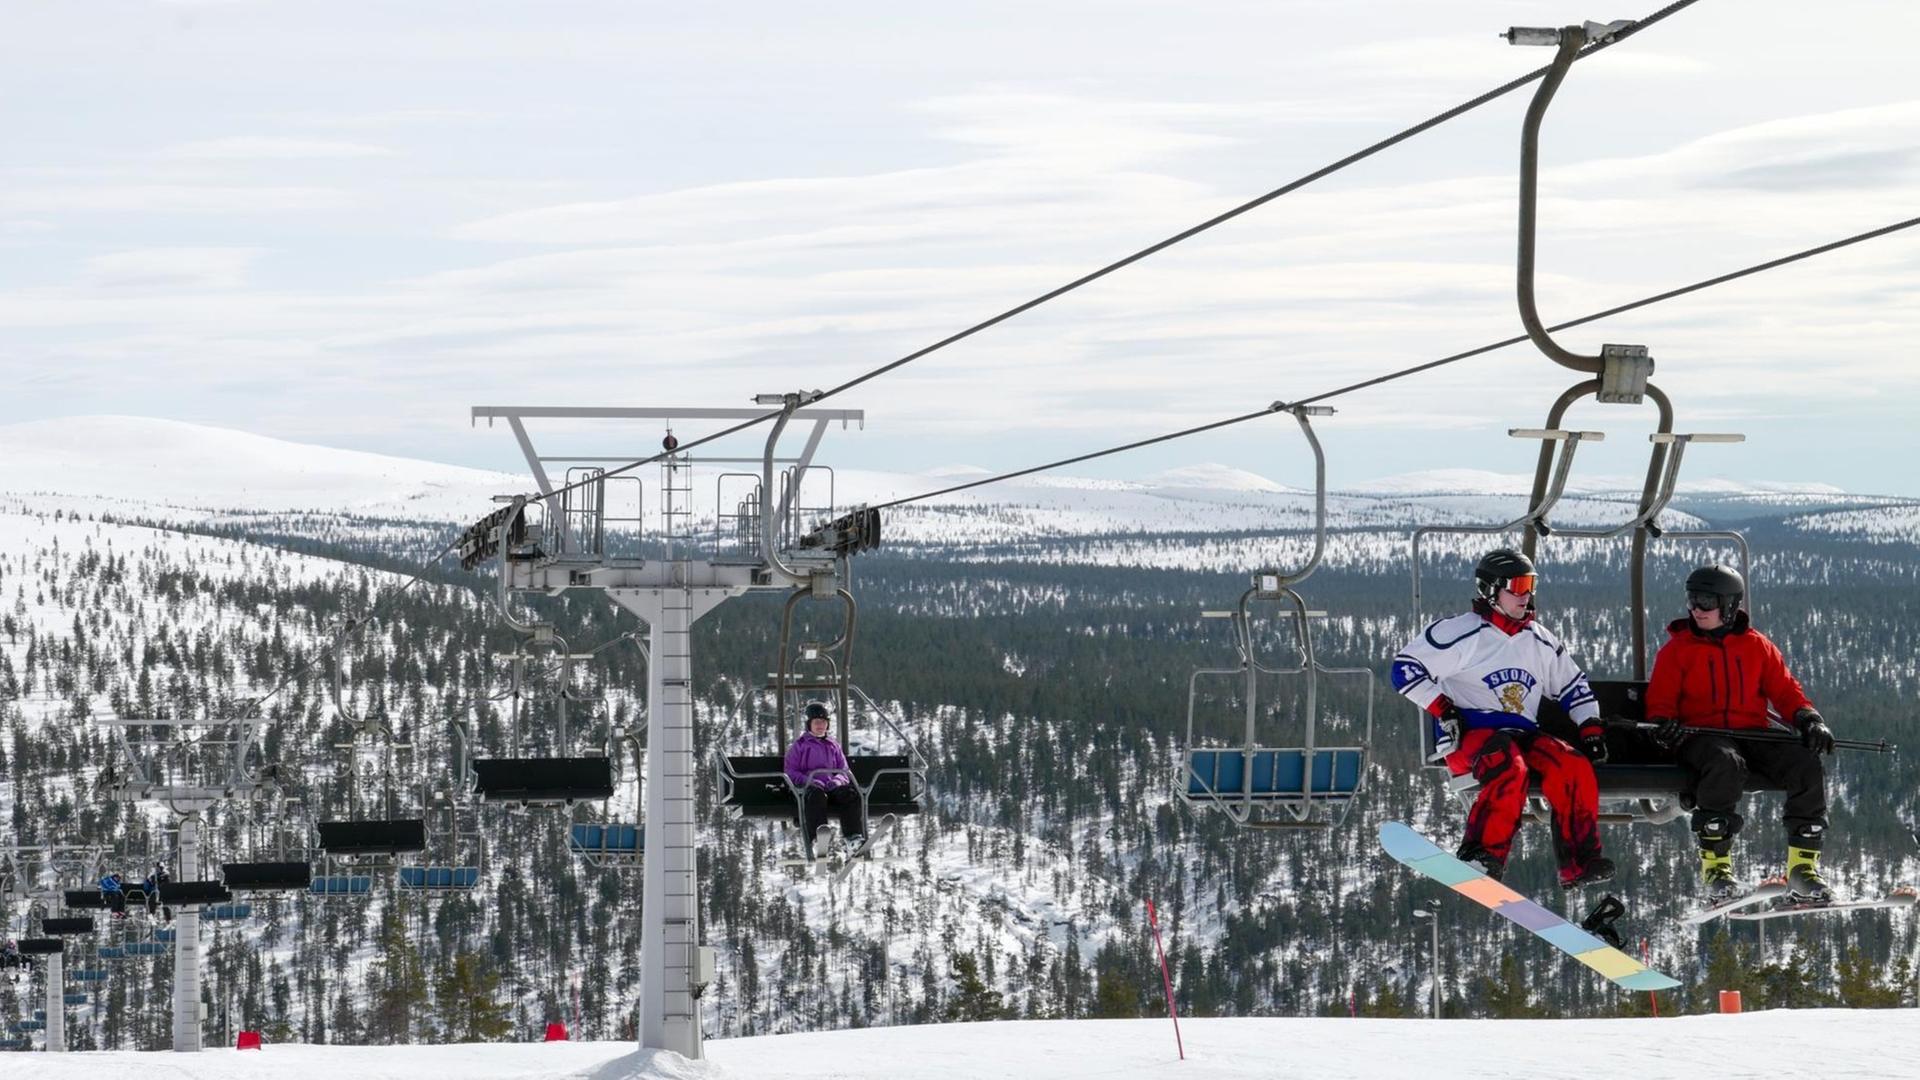 Ein Skilift auf dem Berg Kaunispää vom Ortsteil Saariselkä von Inari (Lappland), aufgenommen am 16.04.2016. Der Ortsteil wird vorwiegend von Touristen frequentiert.